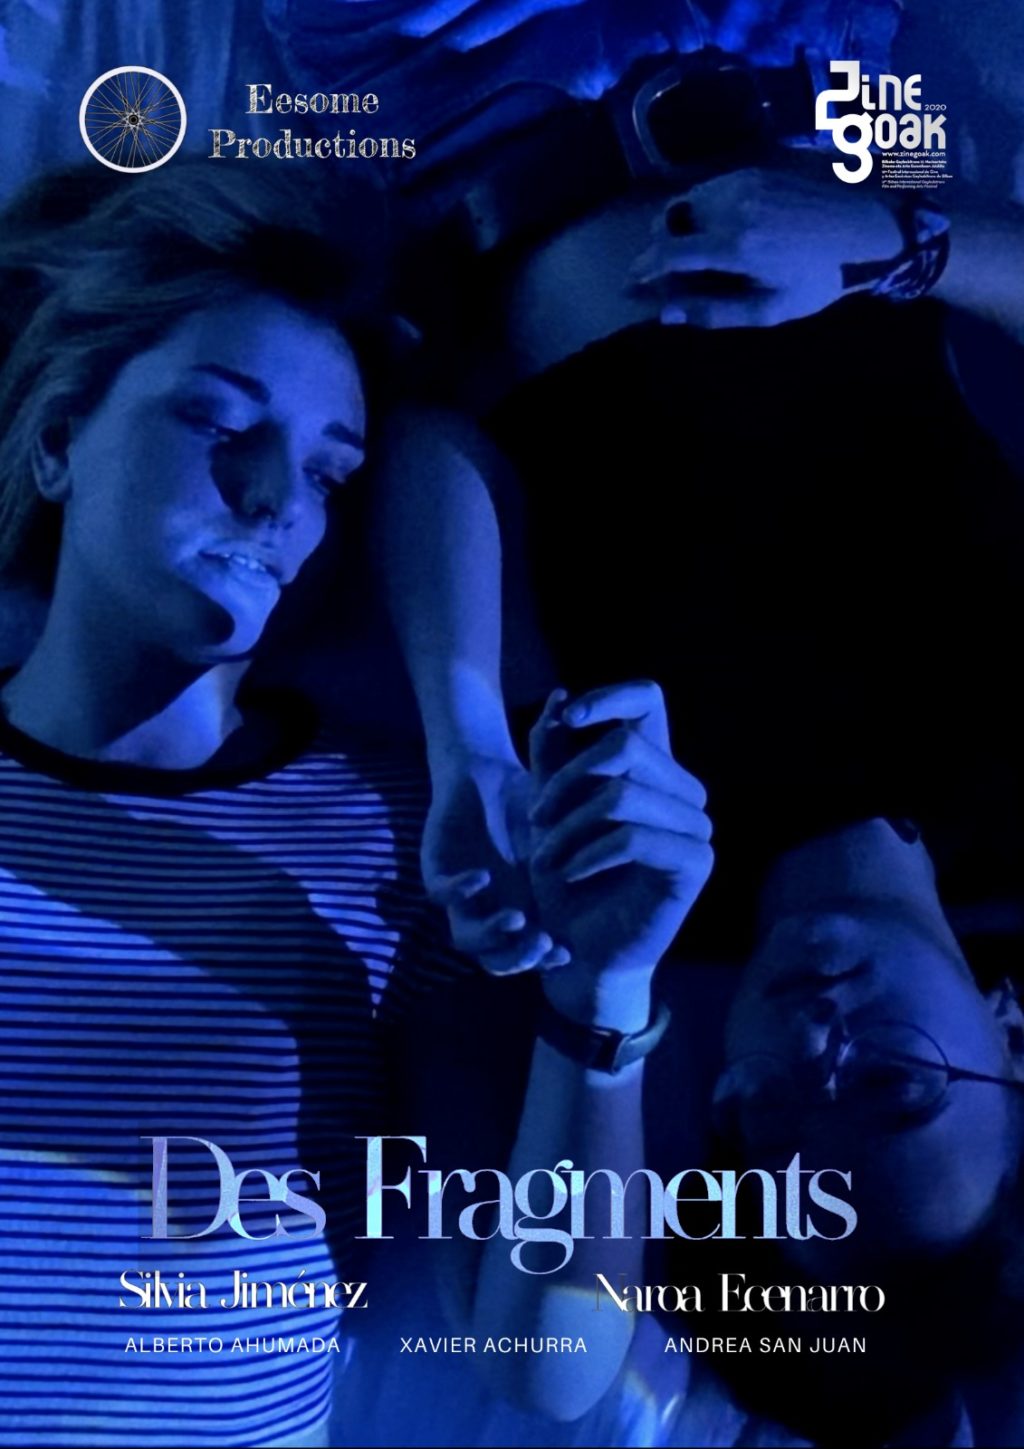 El pasado jueves, el cortometraje Des Fragments (fragmentos) ganó el primer premio del jurado y el premio del público en el festival Zinegoak… Express your sex!